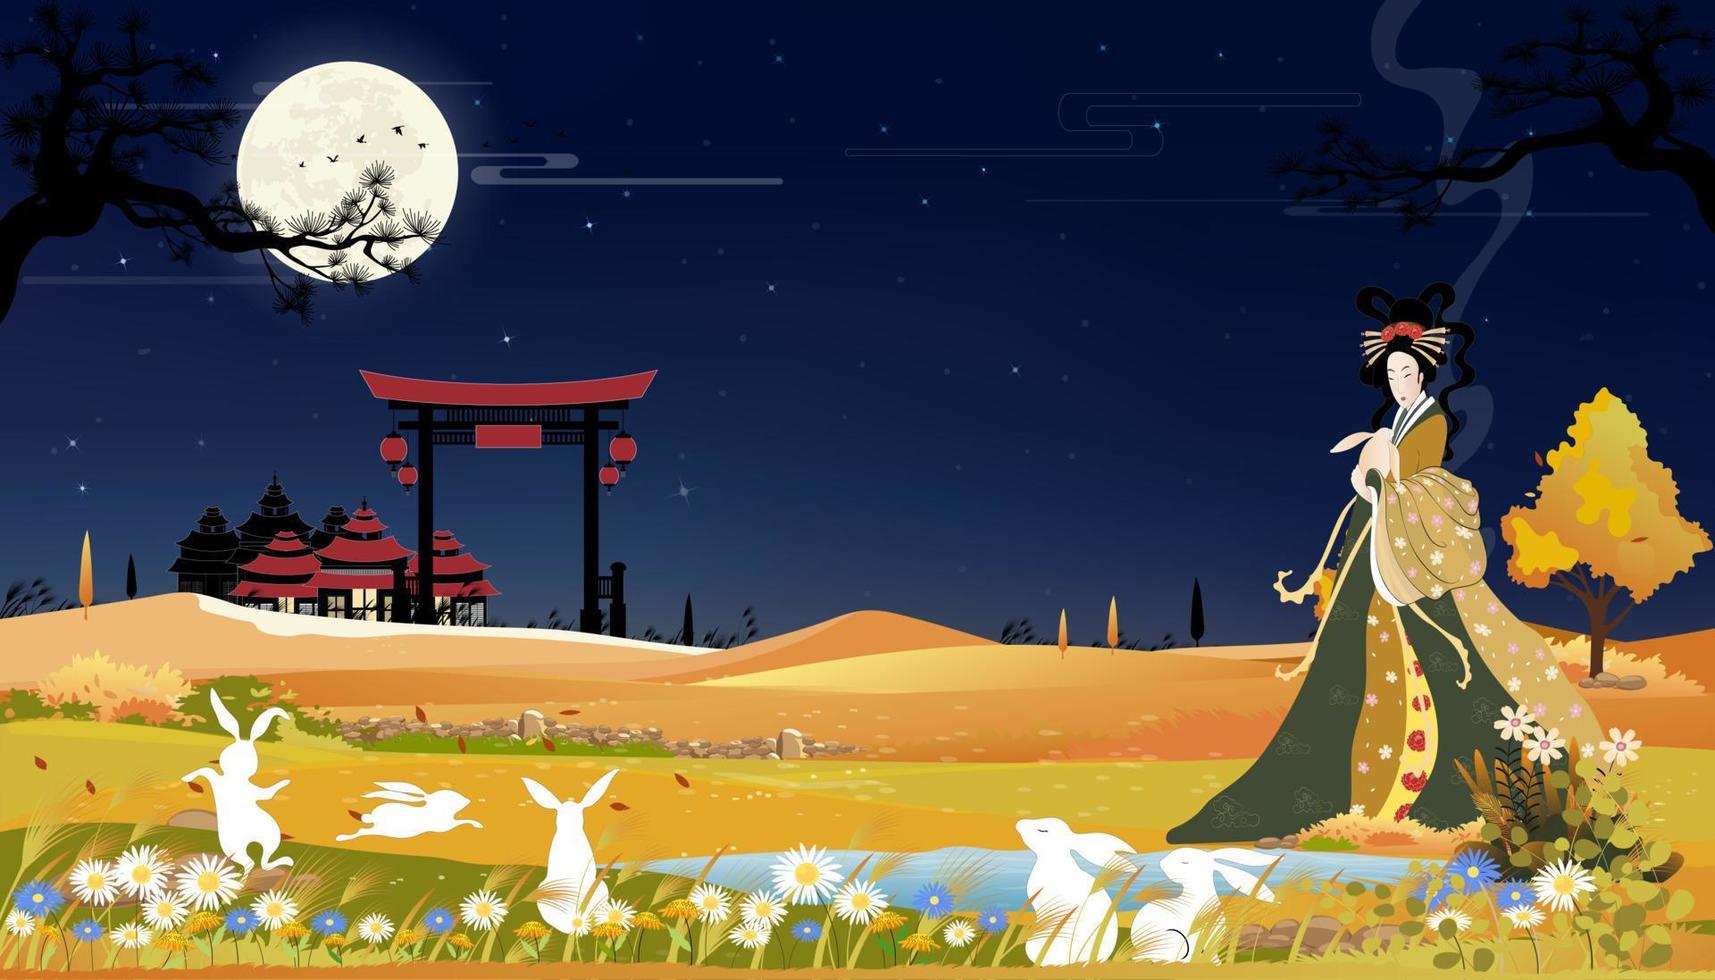 banner do festival do meio do outono com lindo chang e segurando coelhos de jade com lua cheia à noite, ilustração vetorial dos desenhos animados do festival do meio do outono com a deusa chinesa da lua e coelhos brancos vetor